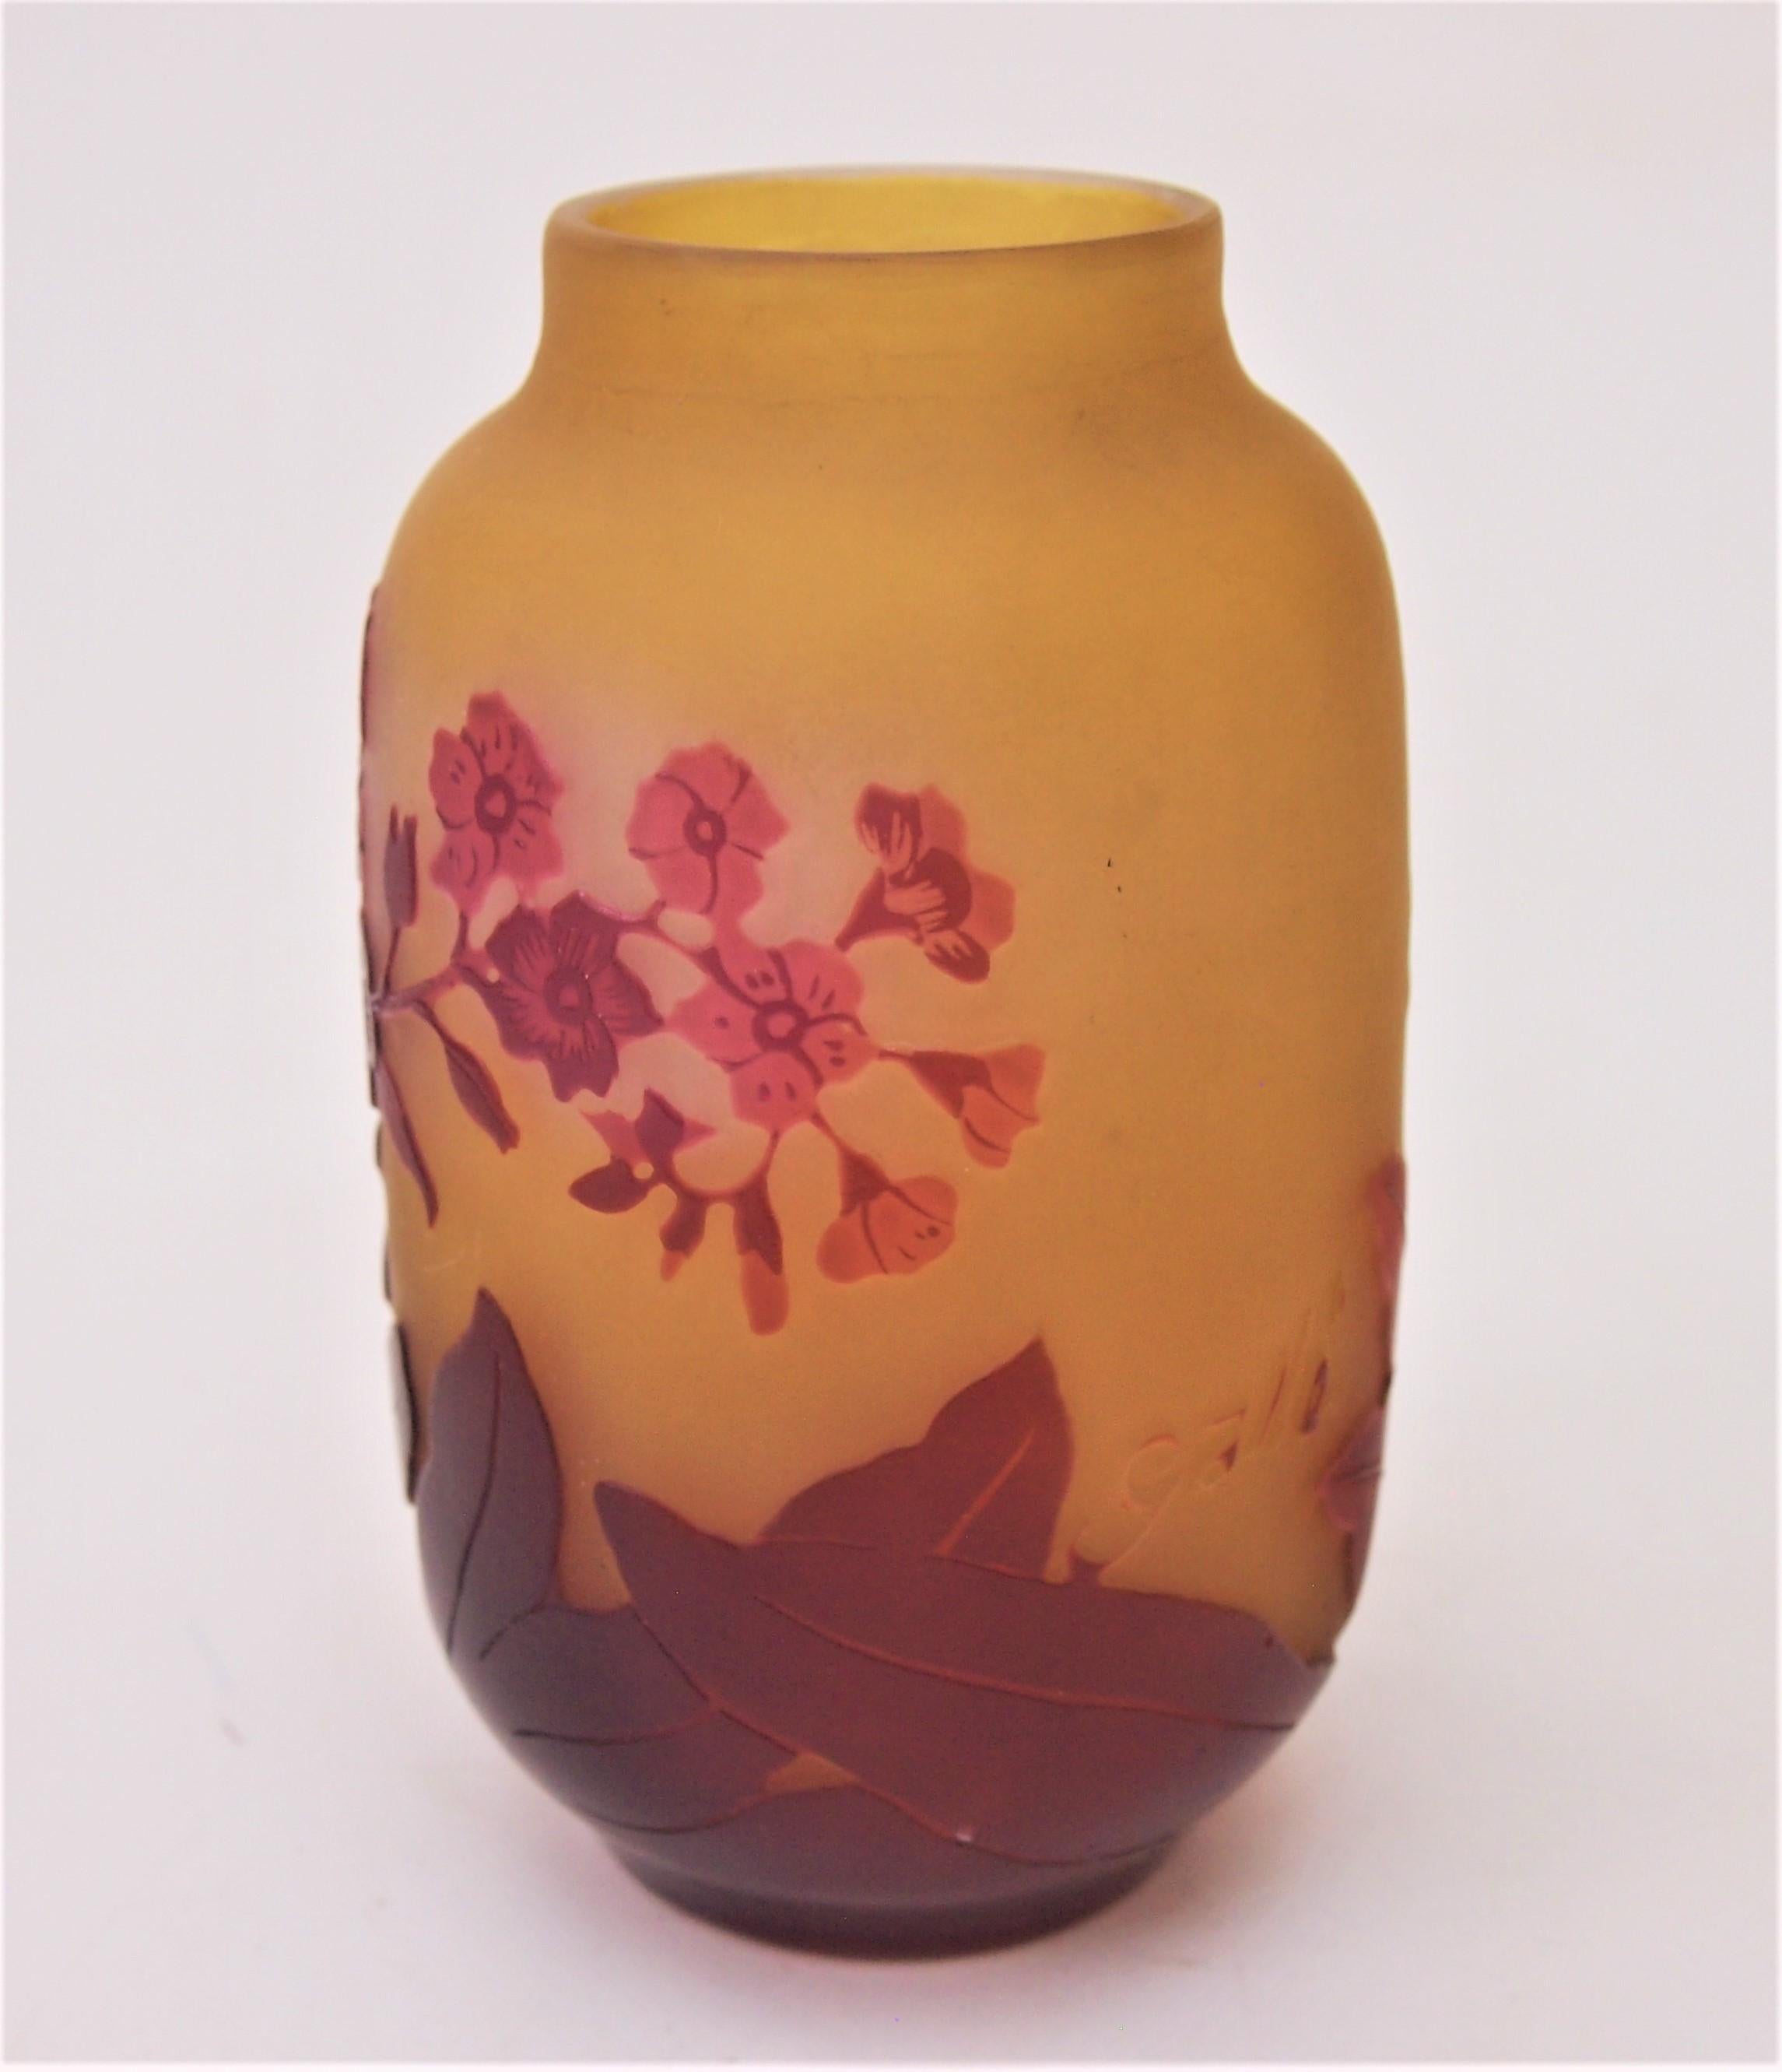 Art Nouveau français Emile Gallé petit vase camée représentant des fleurs en rouge sur orange, avec un fin polissage interne pour mettre en évidence le rouge dans les marguerites, (cette technique est parfois appelée technique de la vitre, l'une des